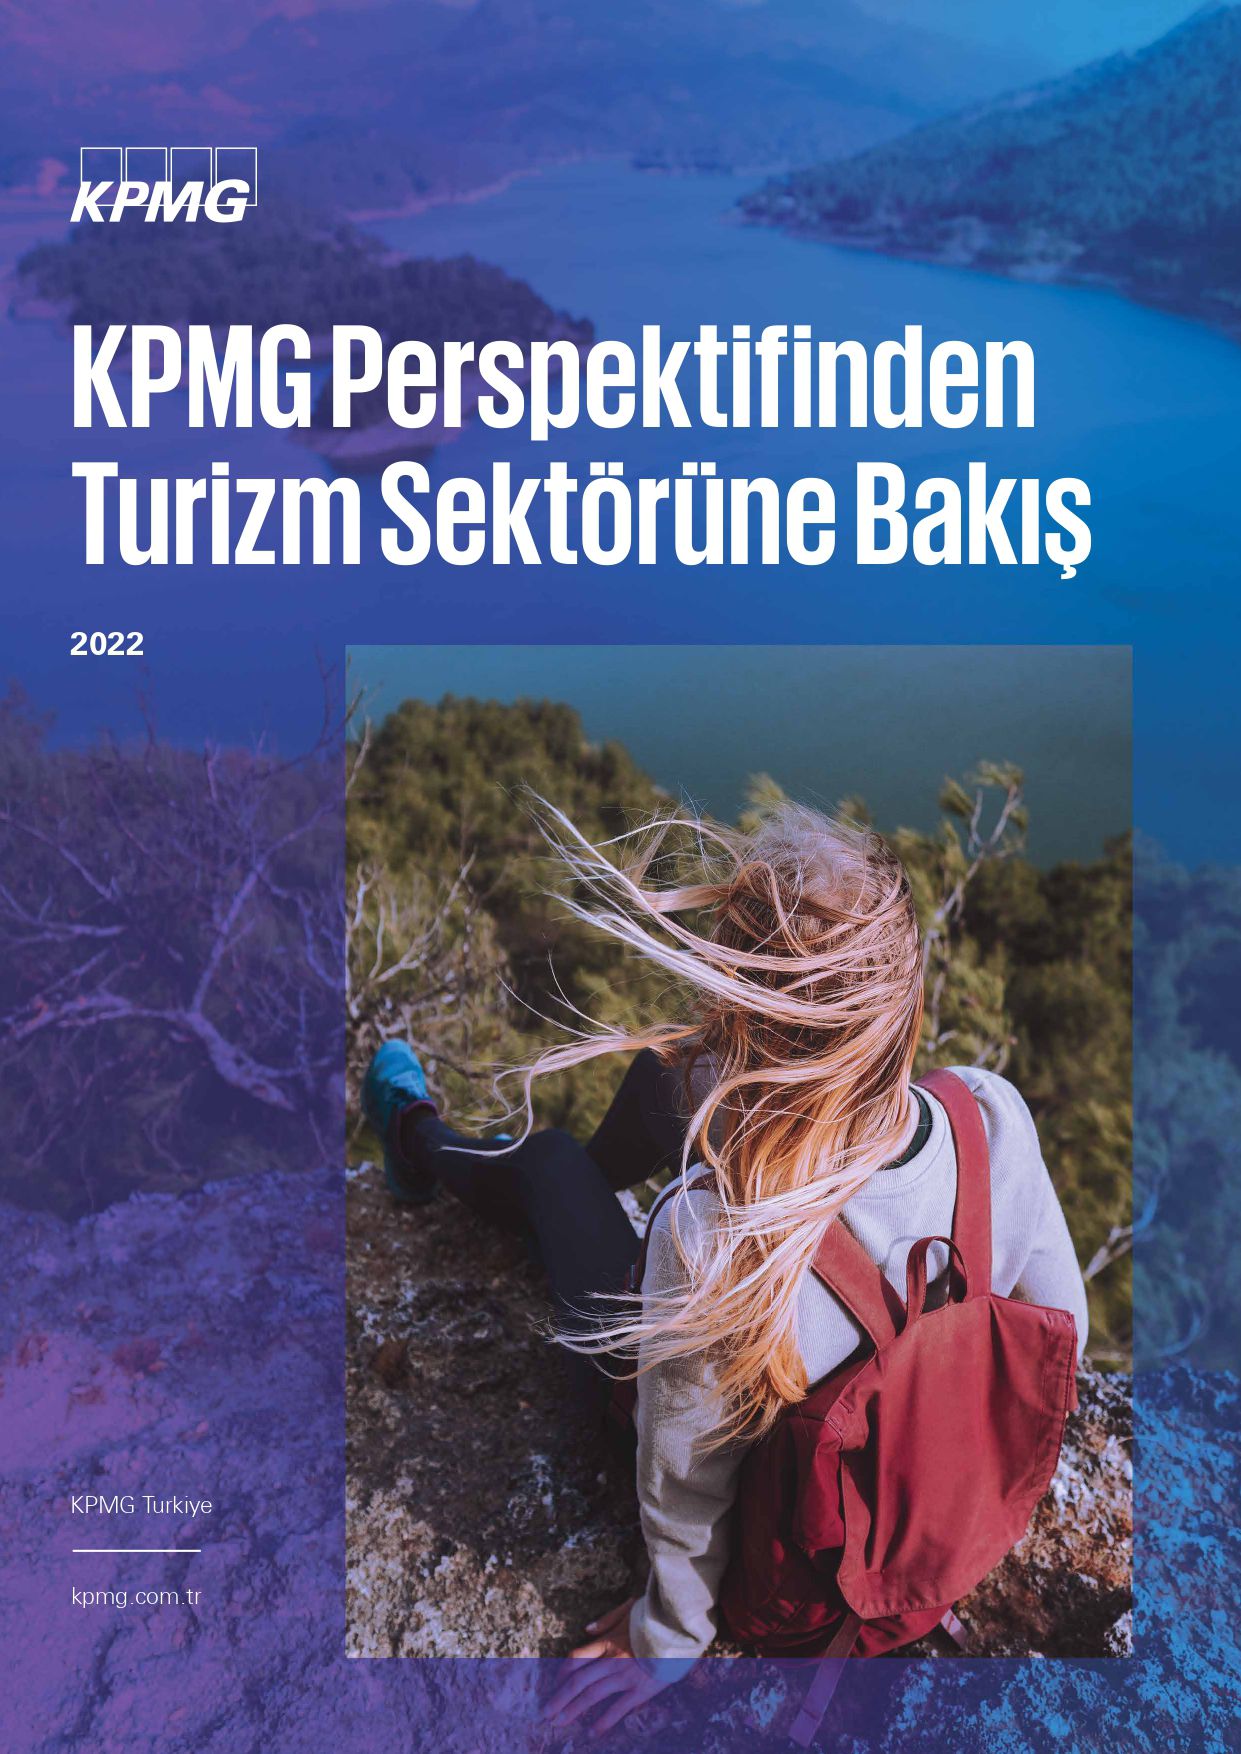 KPMG Türkiye Turizm Sektörel Bakış 2022